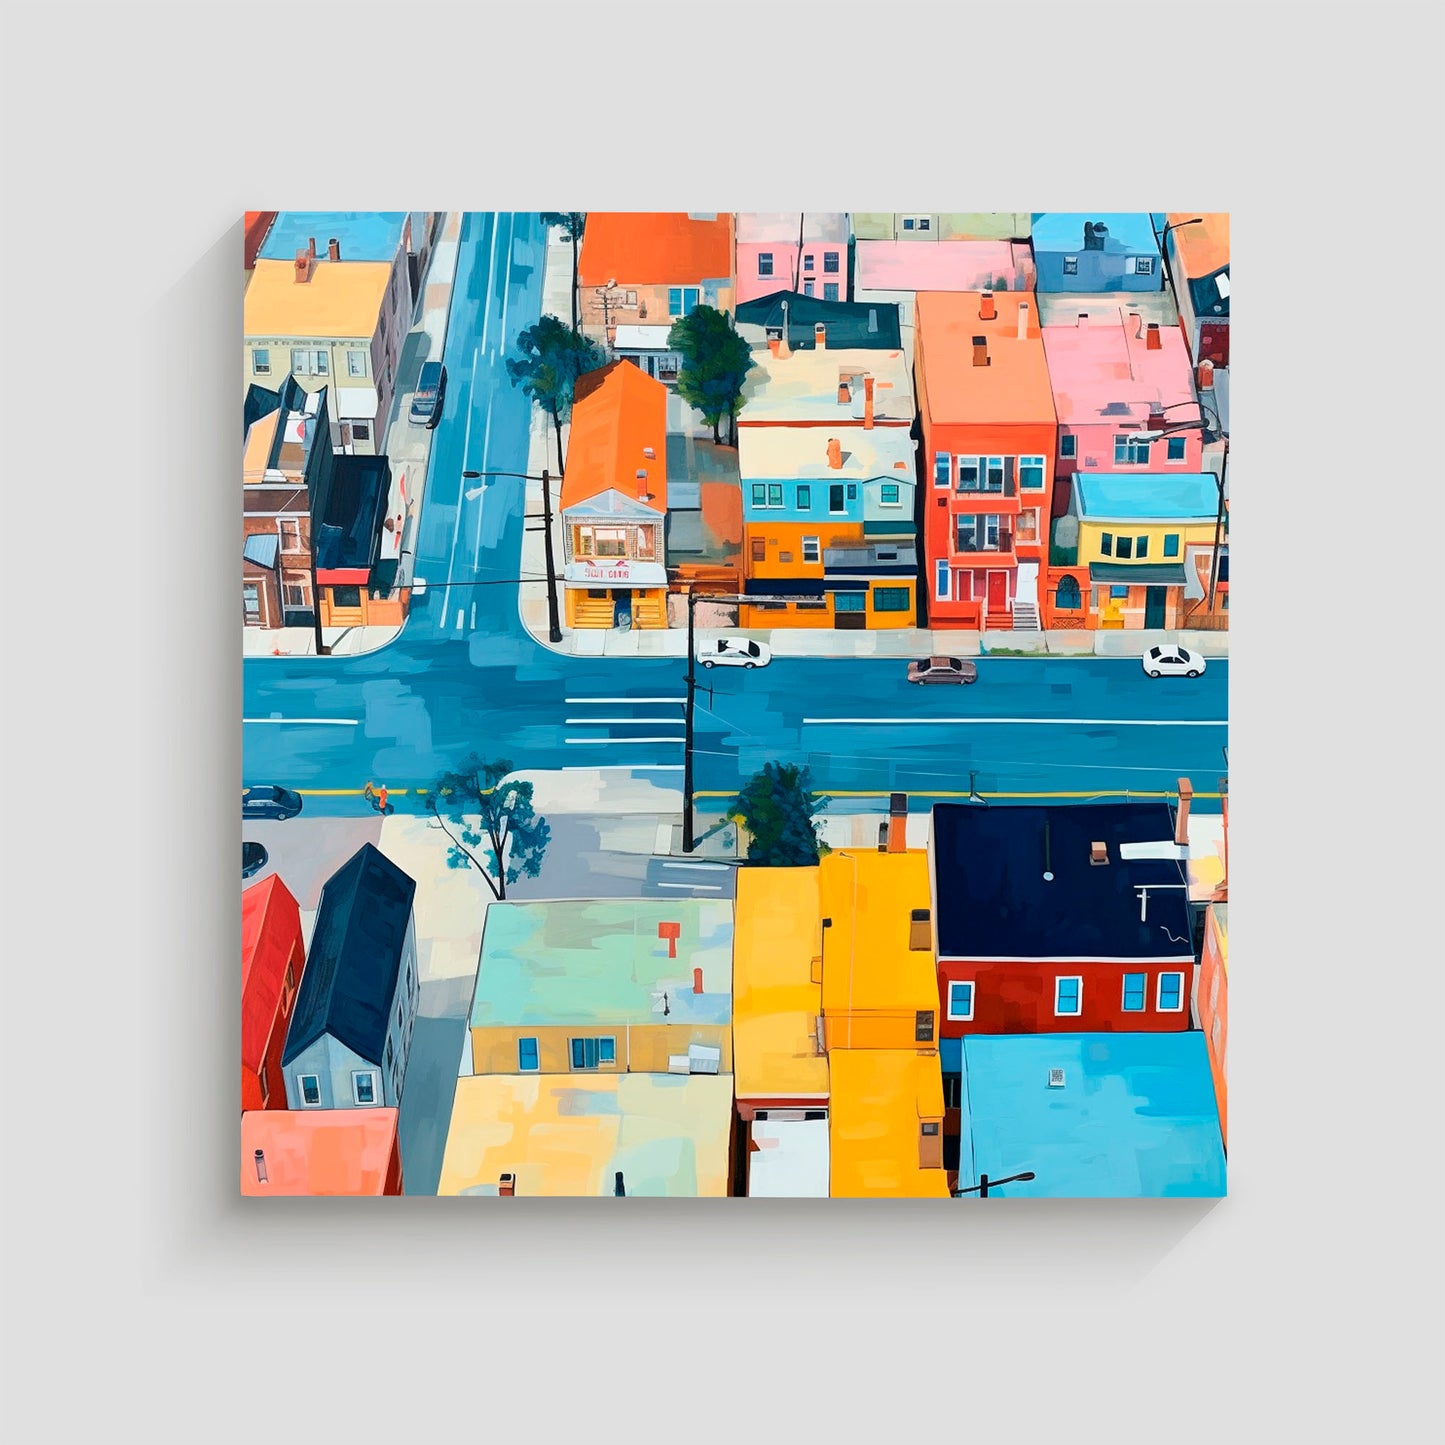 Imagen aérea de un barrio urbano con edificios de colores vivos y calles transitadas, mostrando intersecciones y coches circulando.